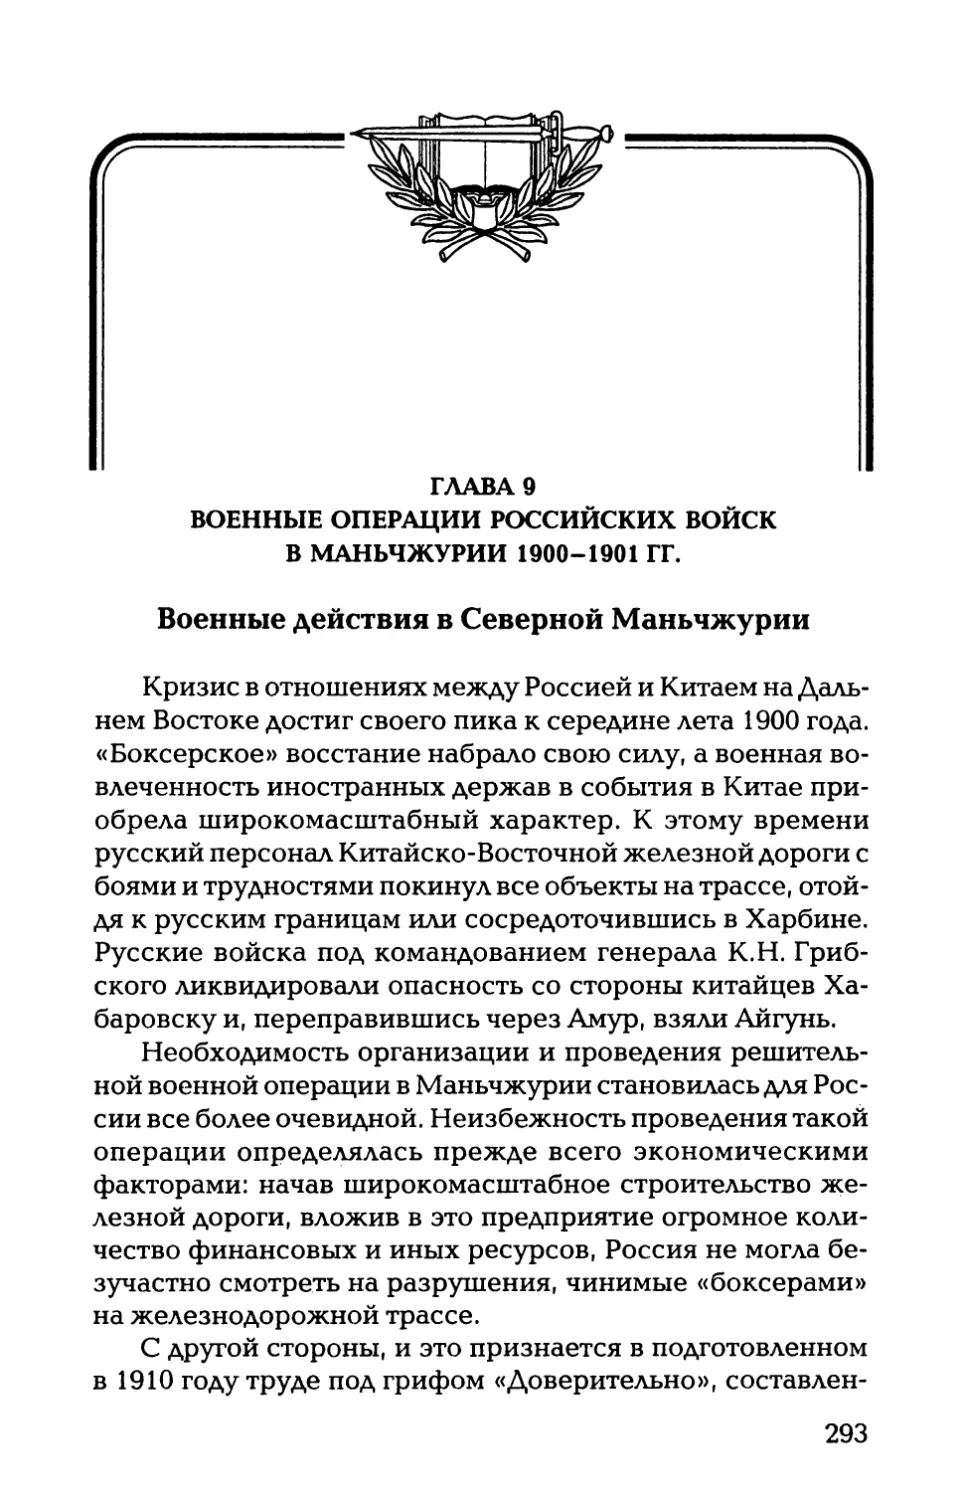 ГЛАВА 9. ВОЕННЫЕ ОПЕРАЦИИ РОССИЙСКИХ ВОЙСК В МАНЬЧЖУРИИ 1900-1901 ГГ.